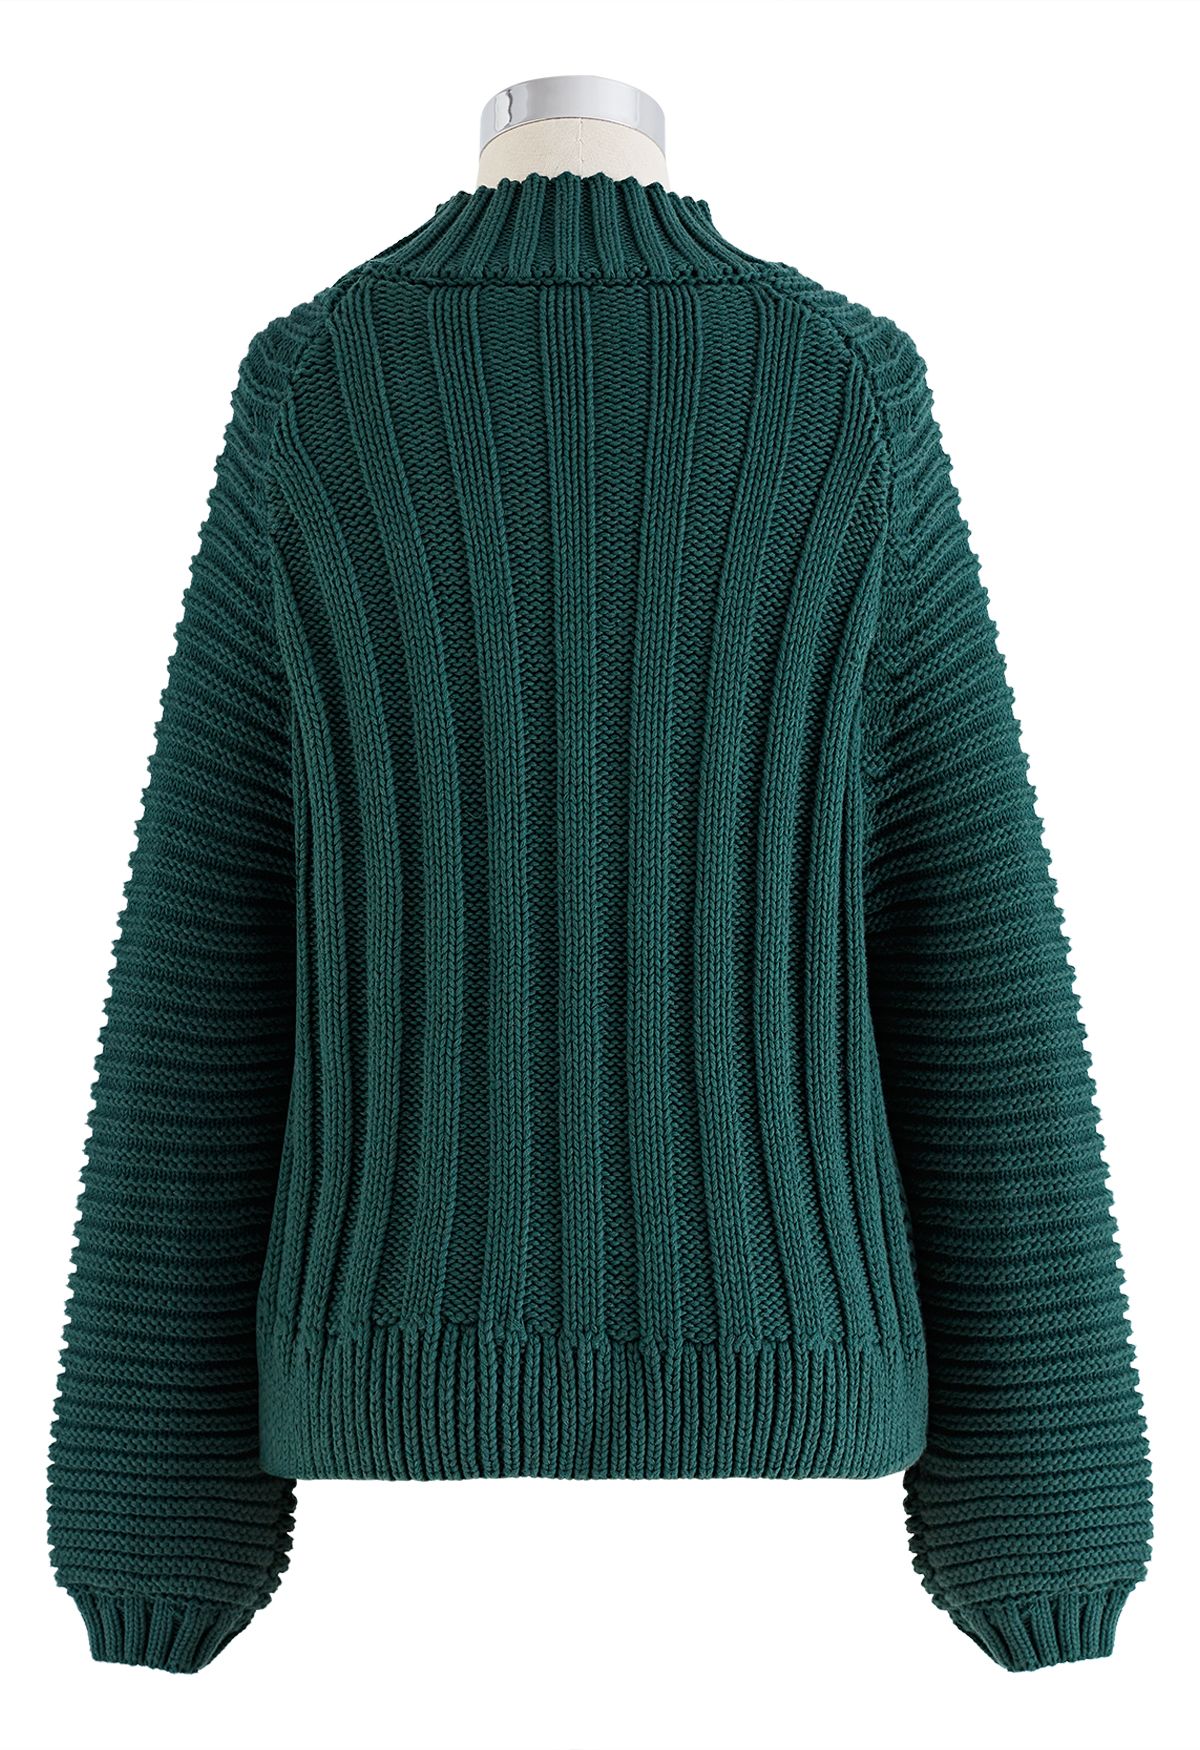 Maglione corto in maglia pesante a collo alto a coste esagerate in verde scuro